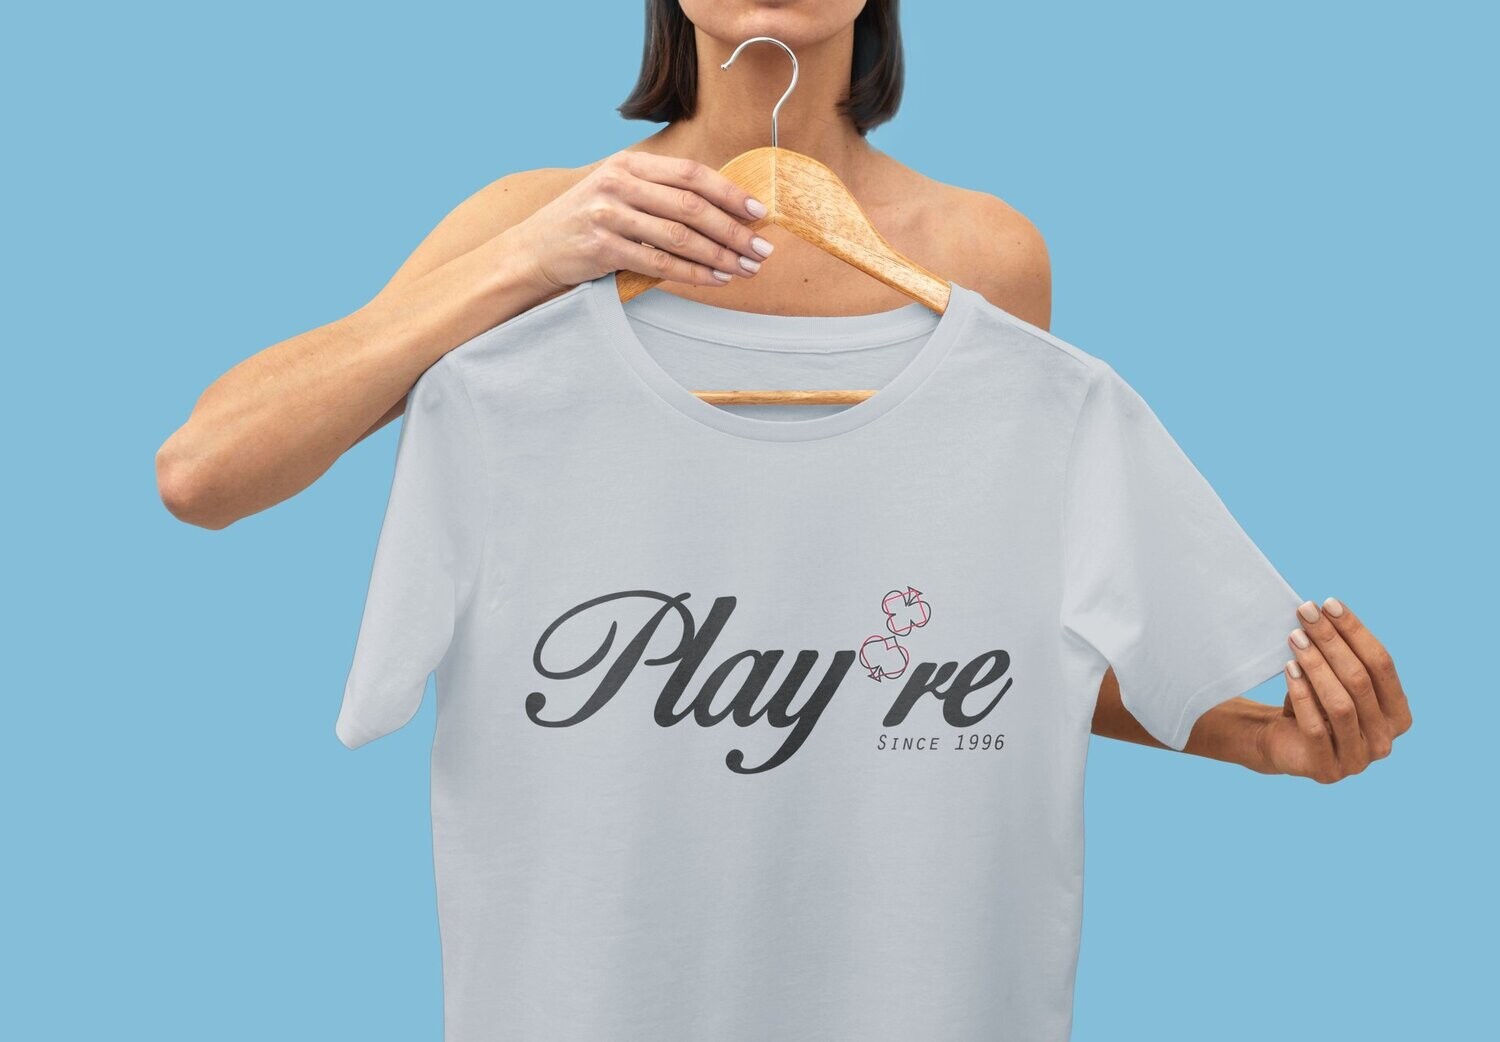 T Shirt Play're Femme